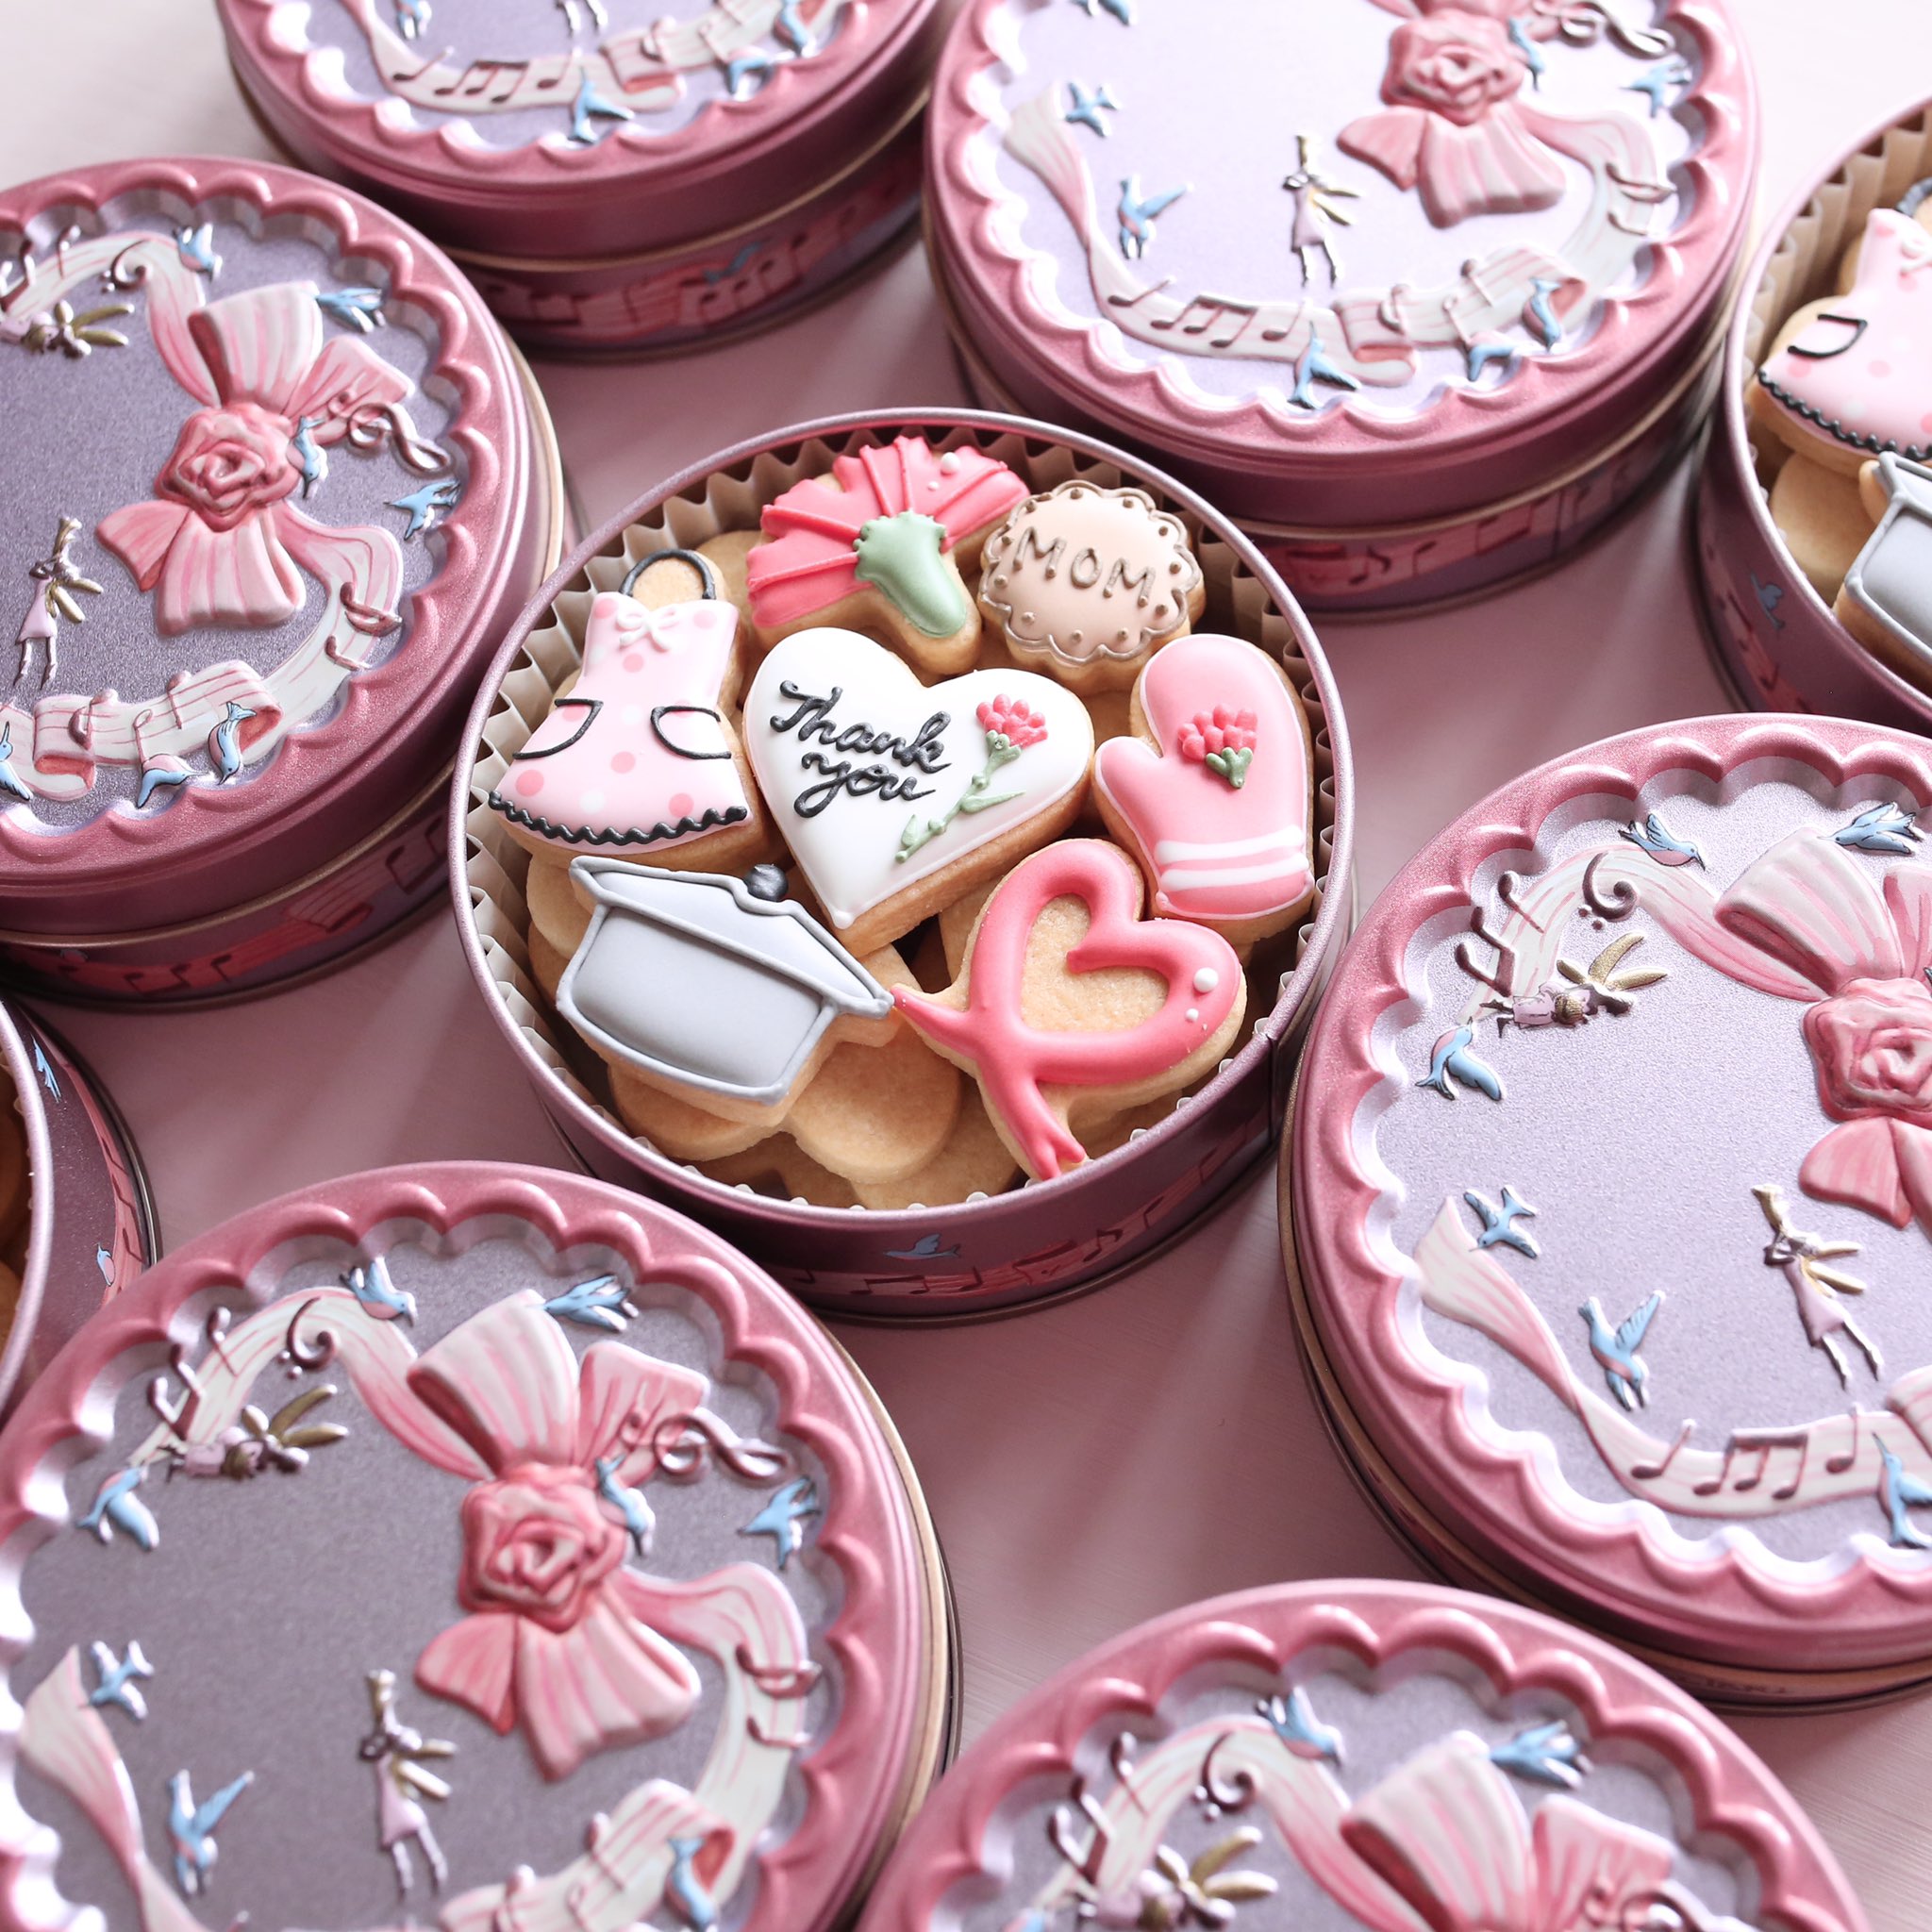 Twitter 上的 Wooyu Factory 우유공장 3 19 21アート てづくりバザール 母の日のクッキー缶2種 完成しました どちらも ピンク色の缶に母の日モチーフのミニクッキーが詰まっています 母の日のプレゼントにぜひどうぞ T Co 0rvmovuym5 母の日